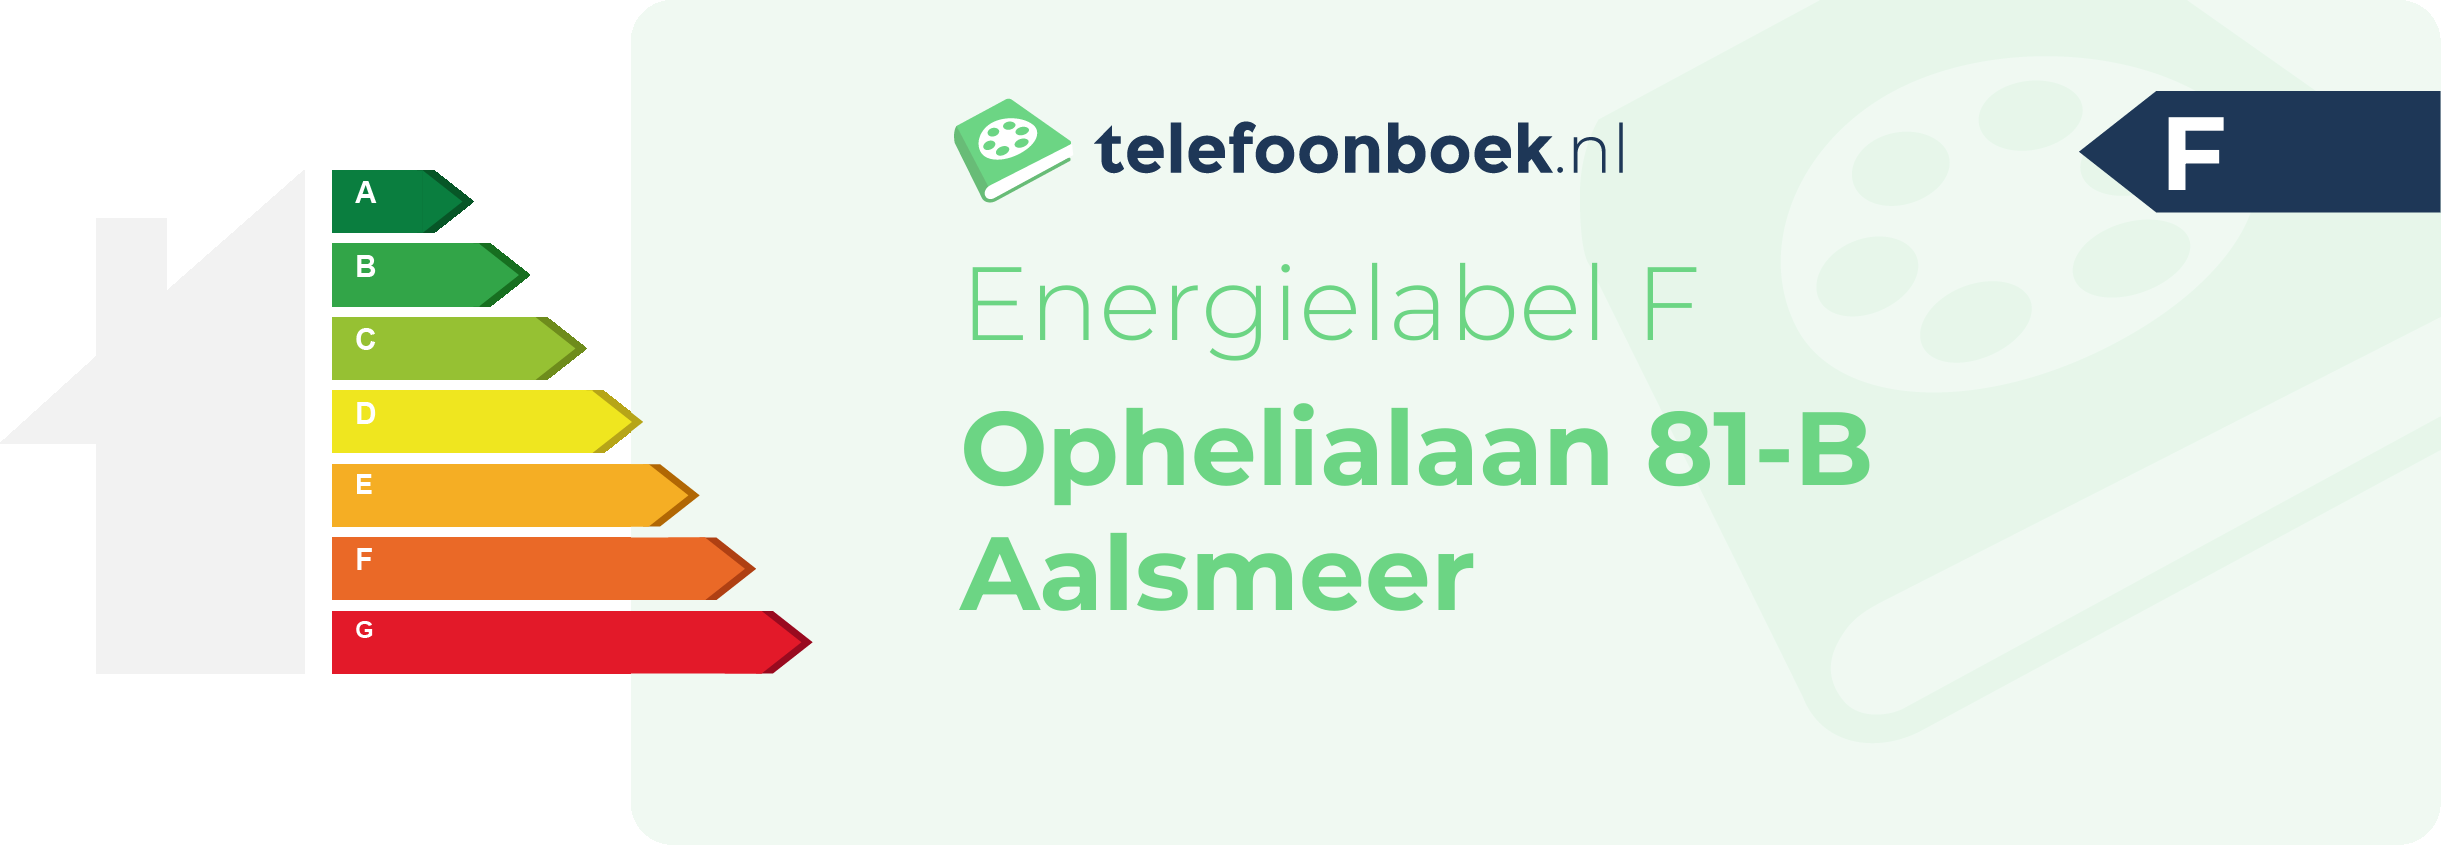 Energielabel Ophelialaan 81-B Aalsmeer